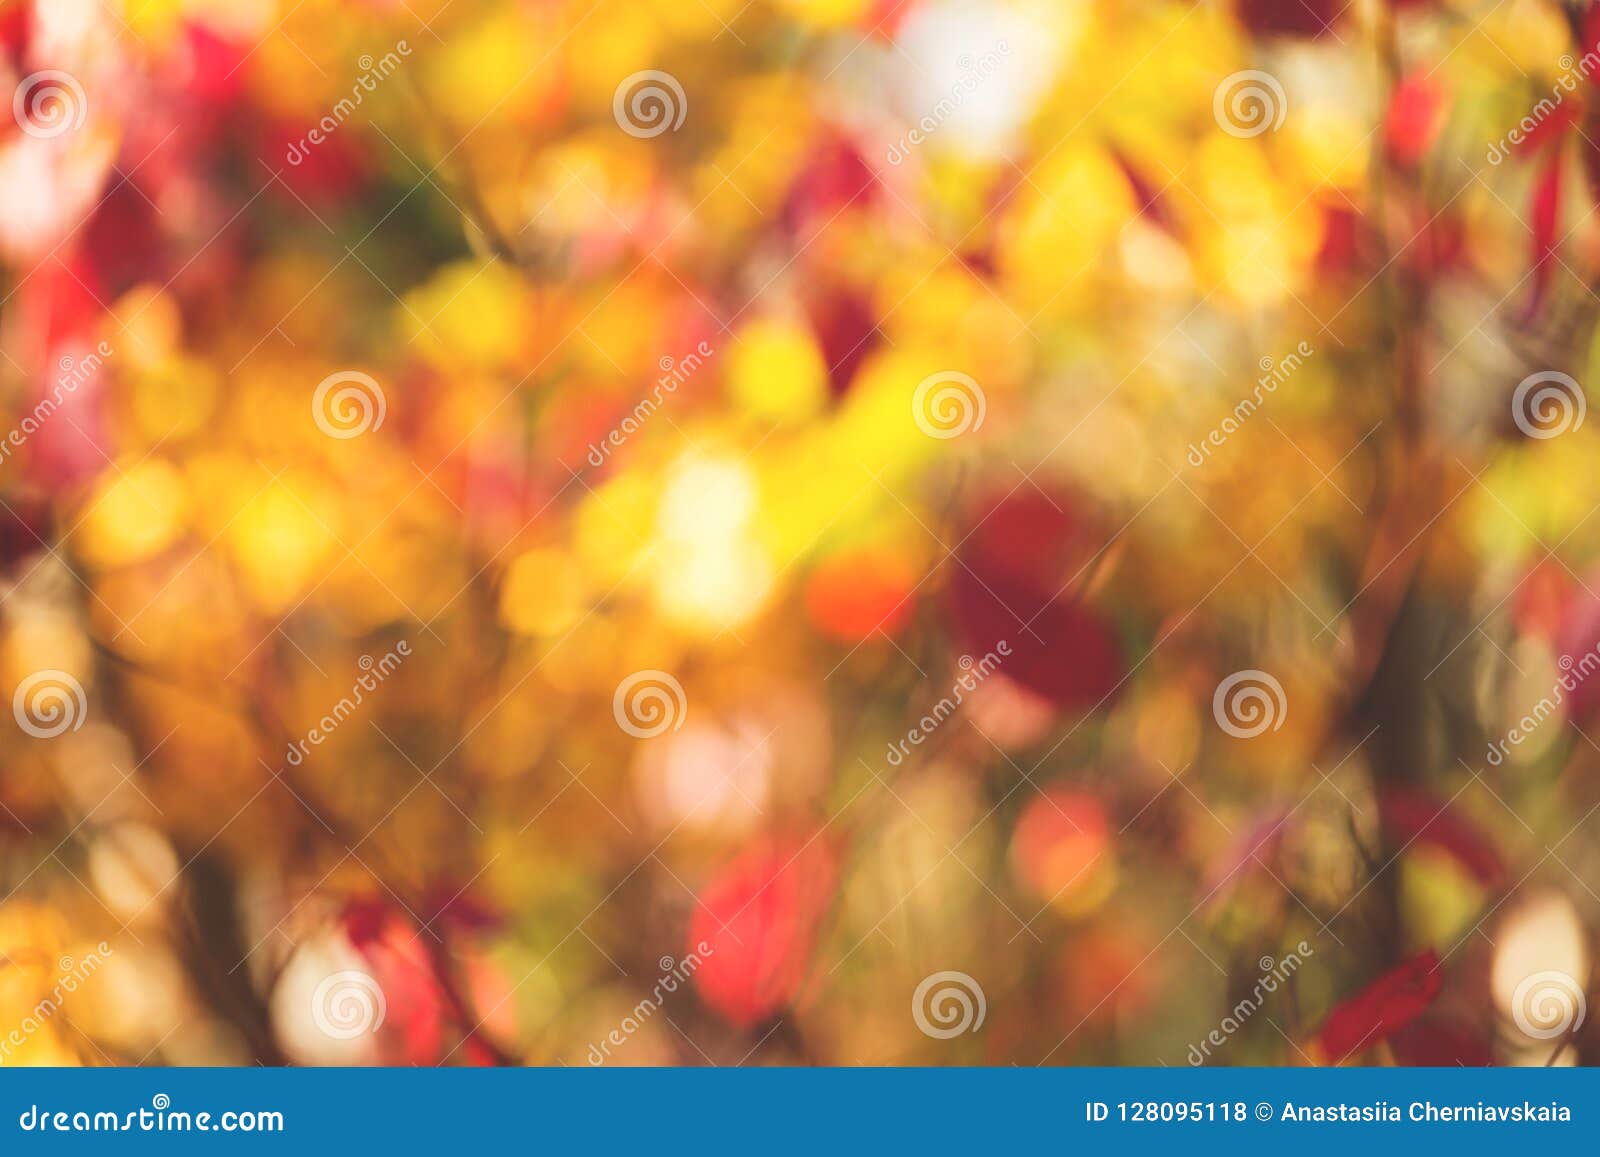 Hãy tưởng tượng bạn đang đi trong công viên và dưới ánh nắng mùa thu, những chiếc lá từng màu, từng hình hài đều rơi rụng xuống. Hãy xem hình ảnh liên quan để cảm nhận vẻ đẹp của chiếc lá và cả thế giới đang xung quanh bạn.